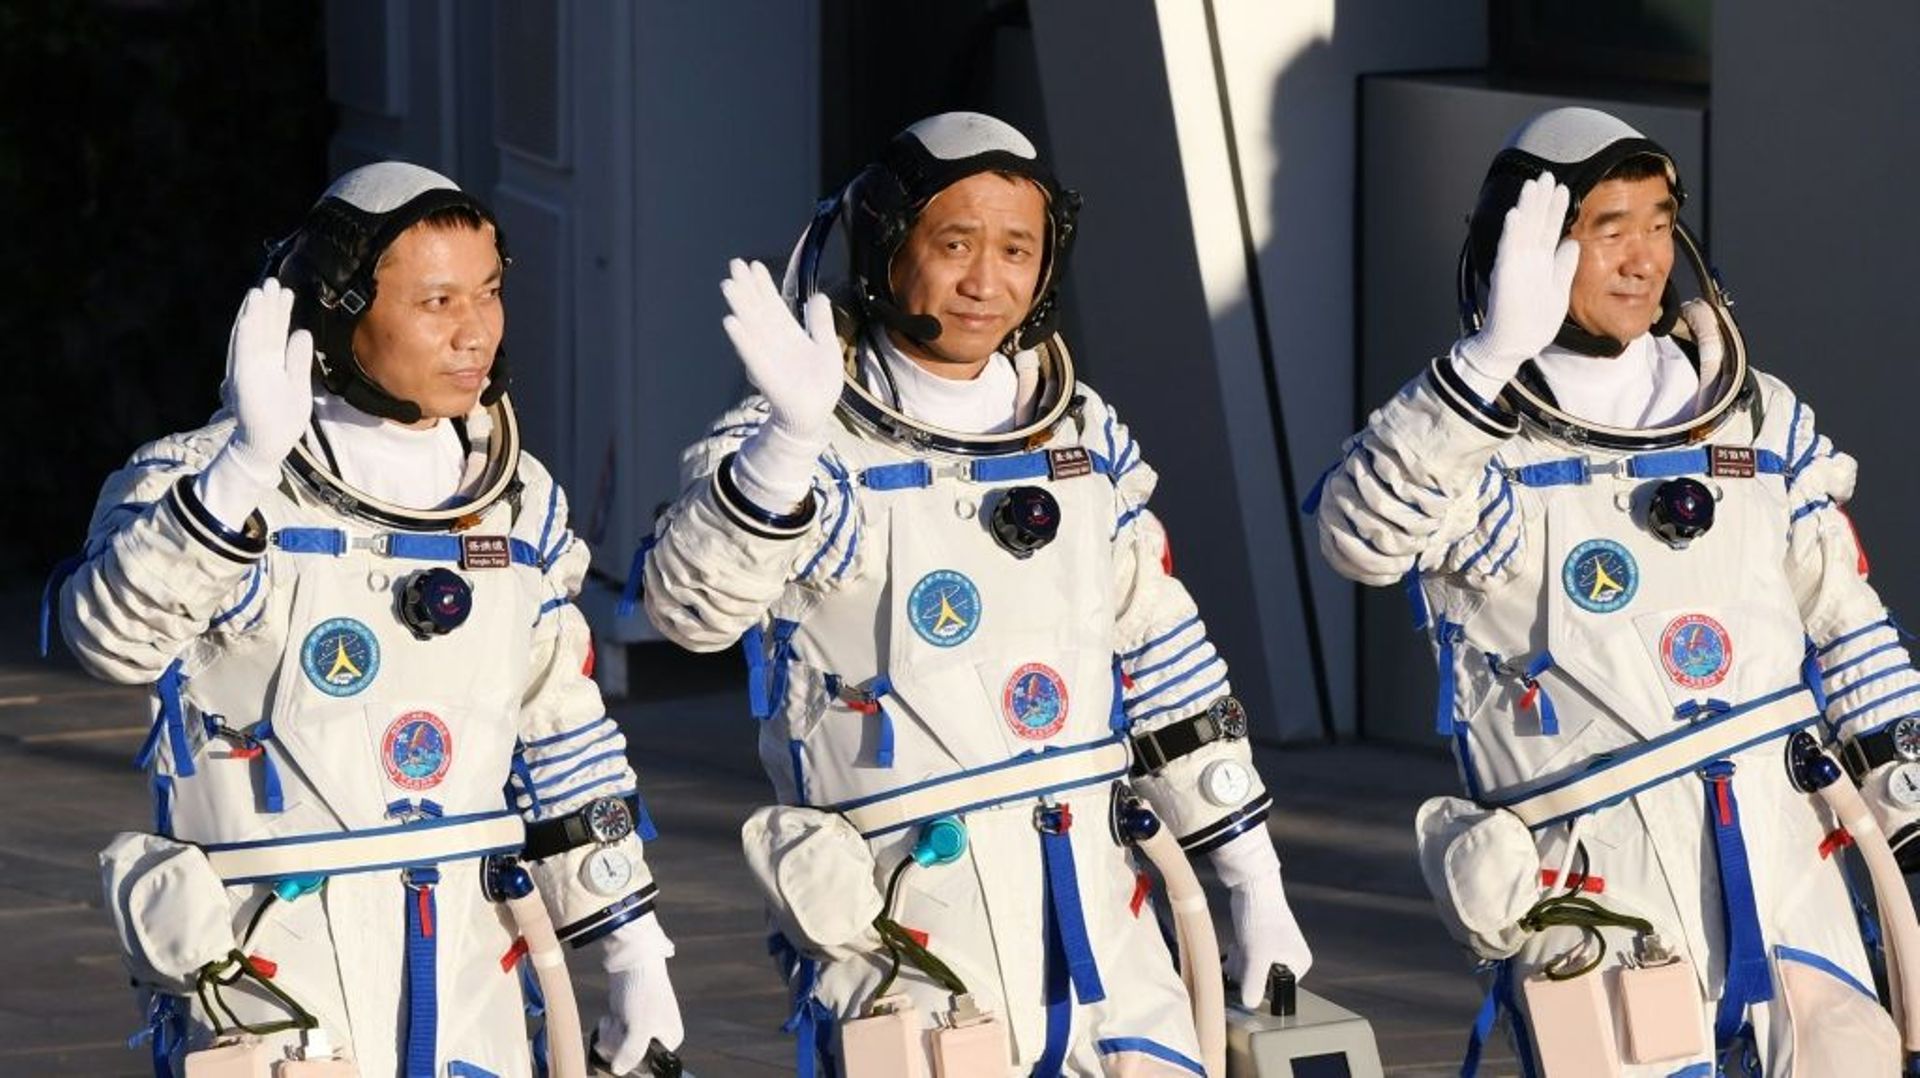 Les astronautes chinois Nie Haisheng (c), Liu Boming (d) et Tang Hongbo salue la foule avant leur décollage à bord de la fusée Longue-Marche 2F au Centre de lancement spatial de Jiuquan, le 17 juin 2021 en Chine